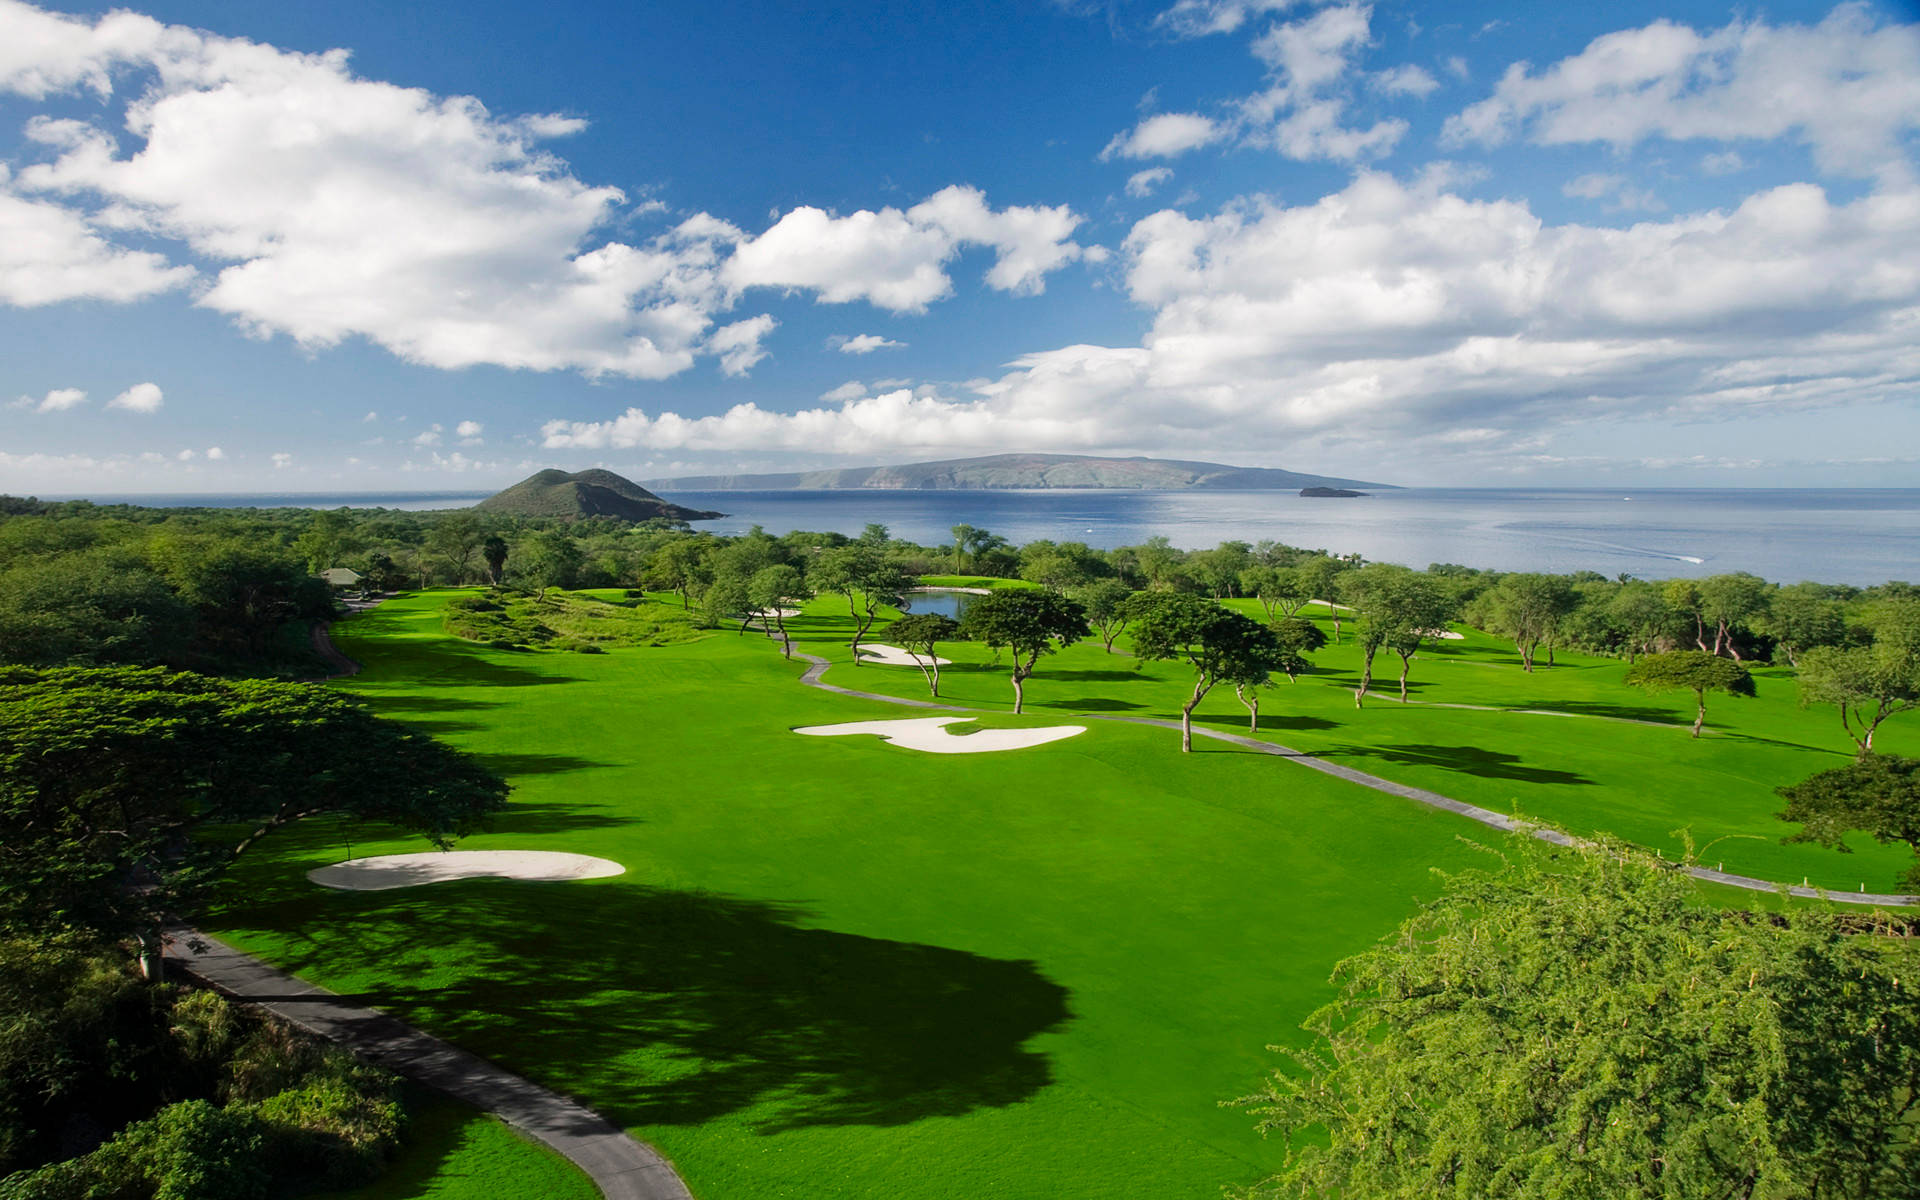 Ultra HD Golf Course Island Wallpaper